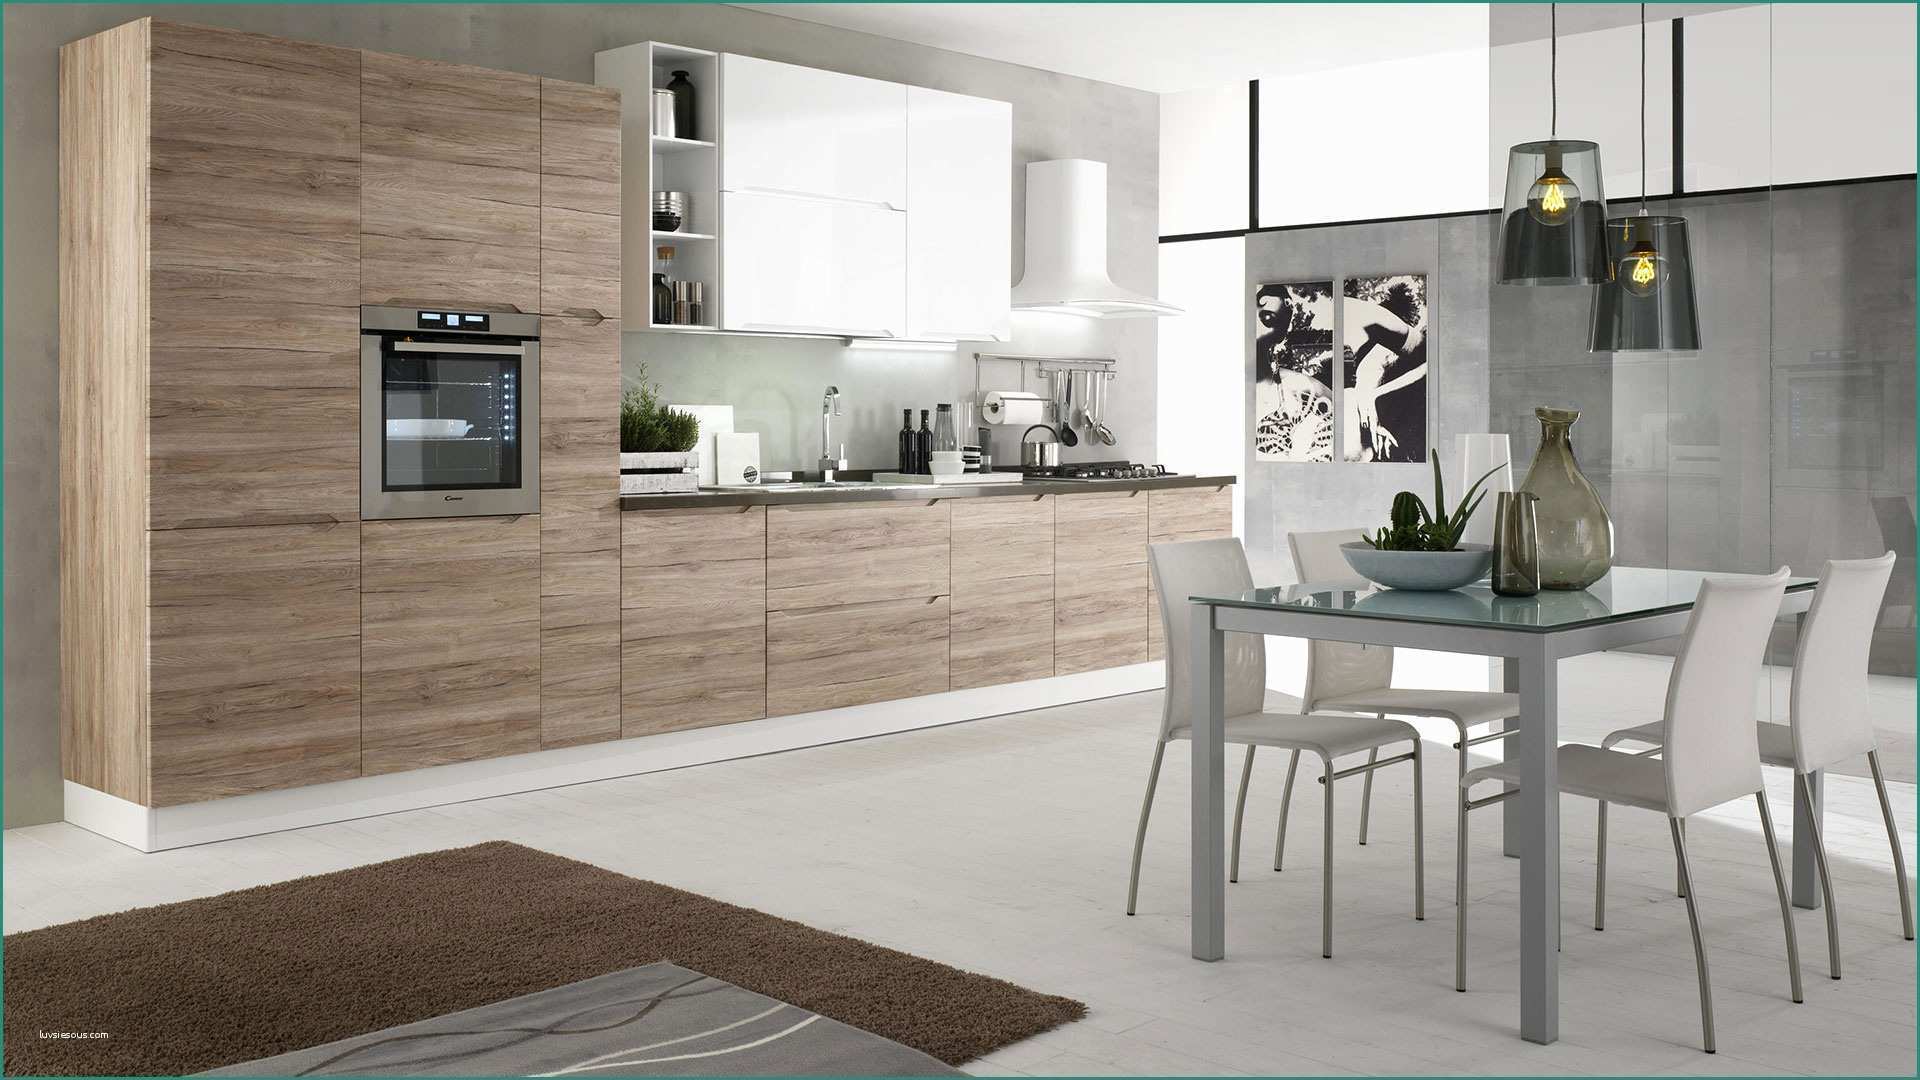 Cucina Da Esposizione E Immagini Di Cucine Moderne Excellent soggiorno Open Space soggiorno